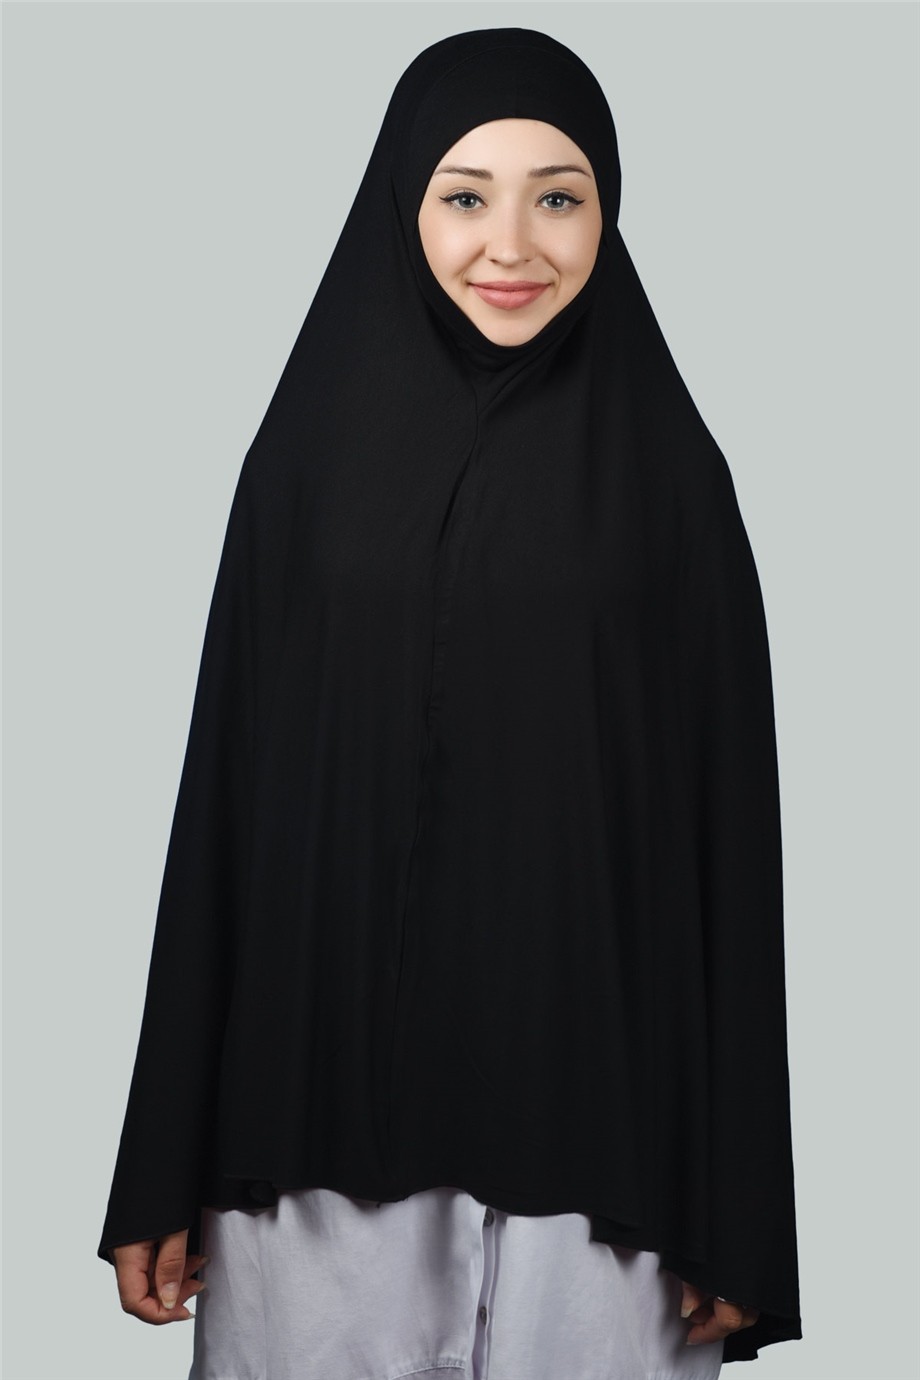 Hazır Türban Peçeli Pratik Eşarp Tesettür Nikaplı Hijab - Namaz Örtüsü Sufle (5XL)